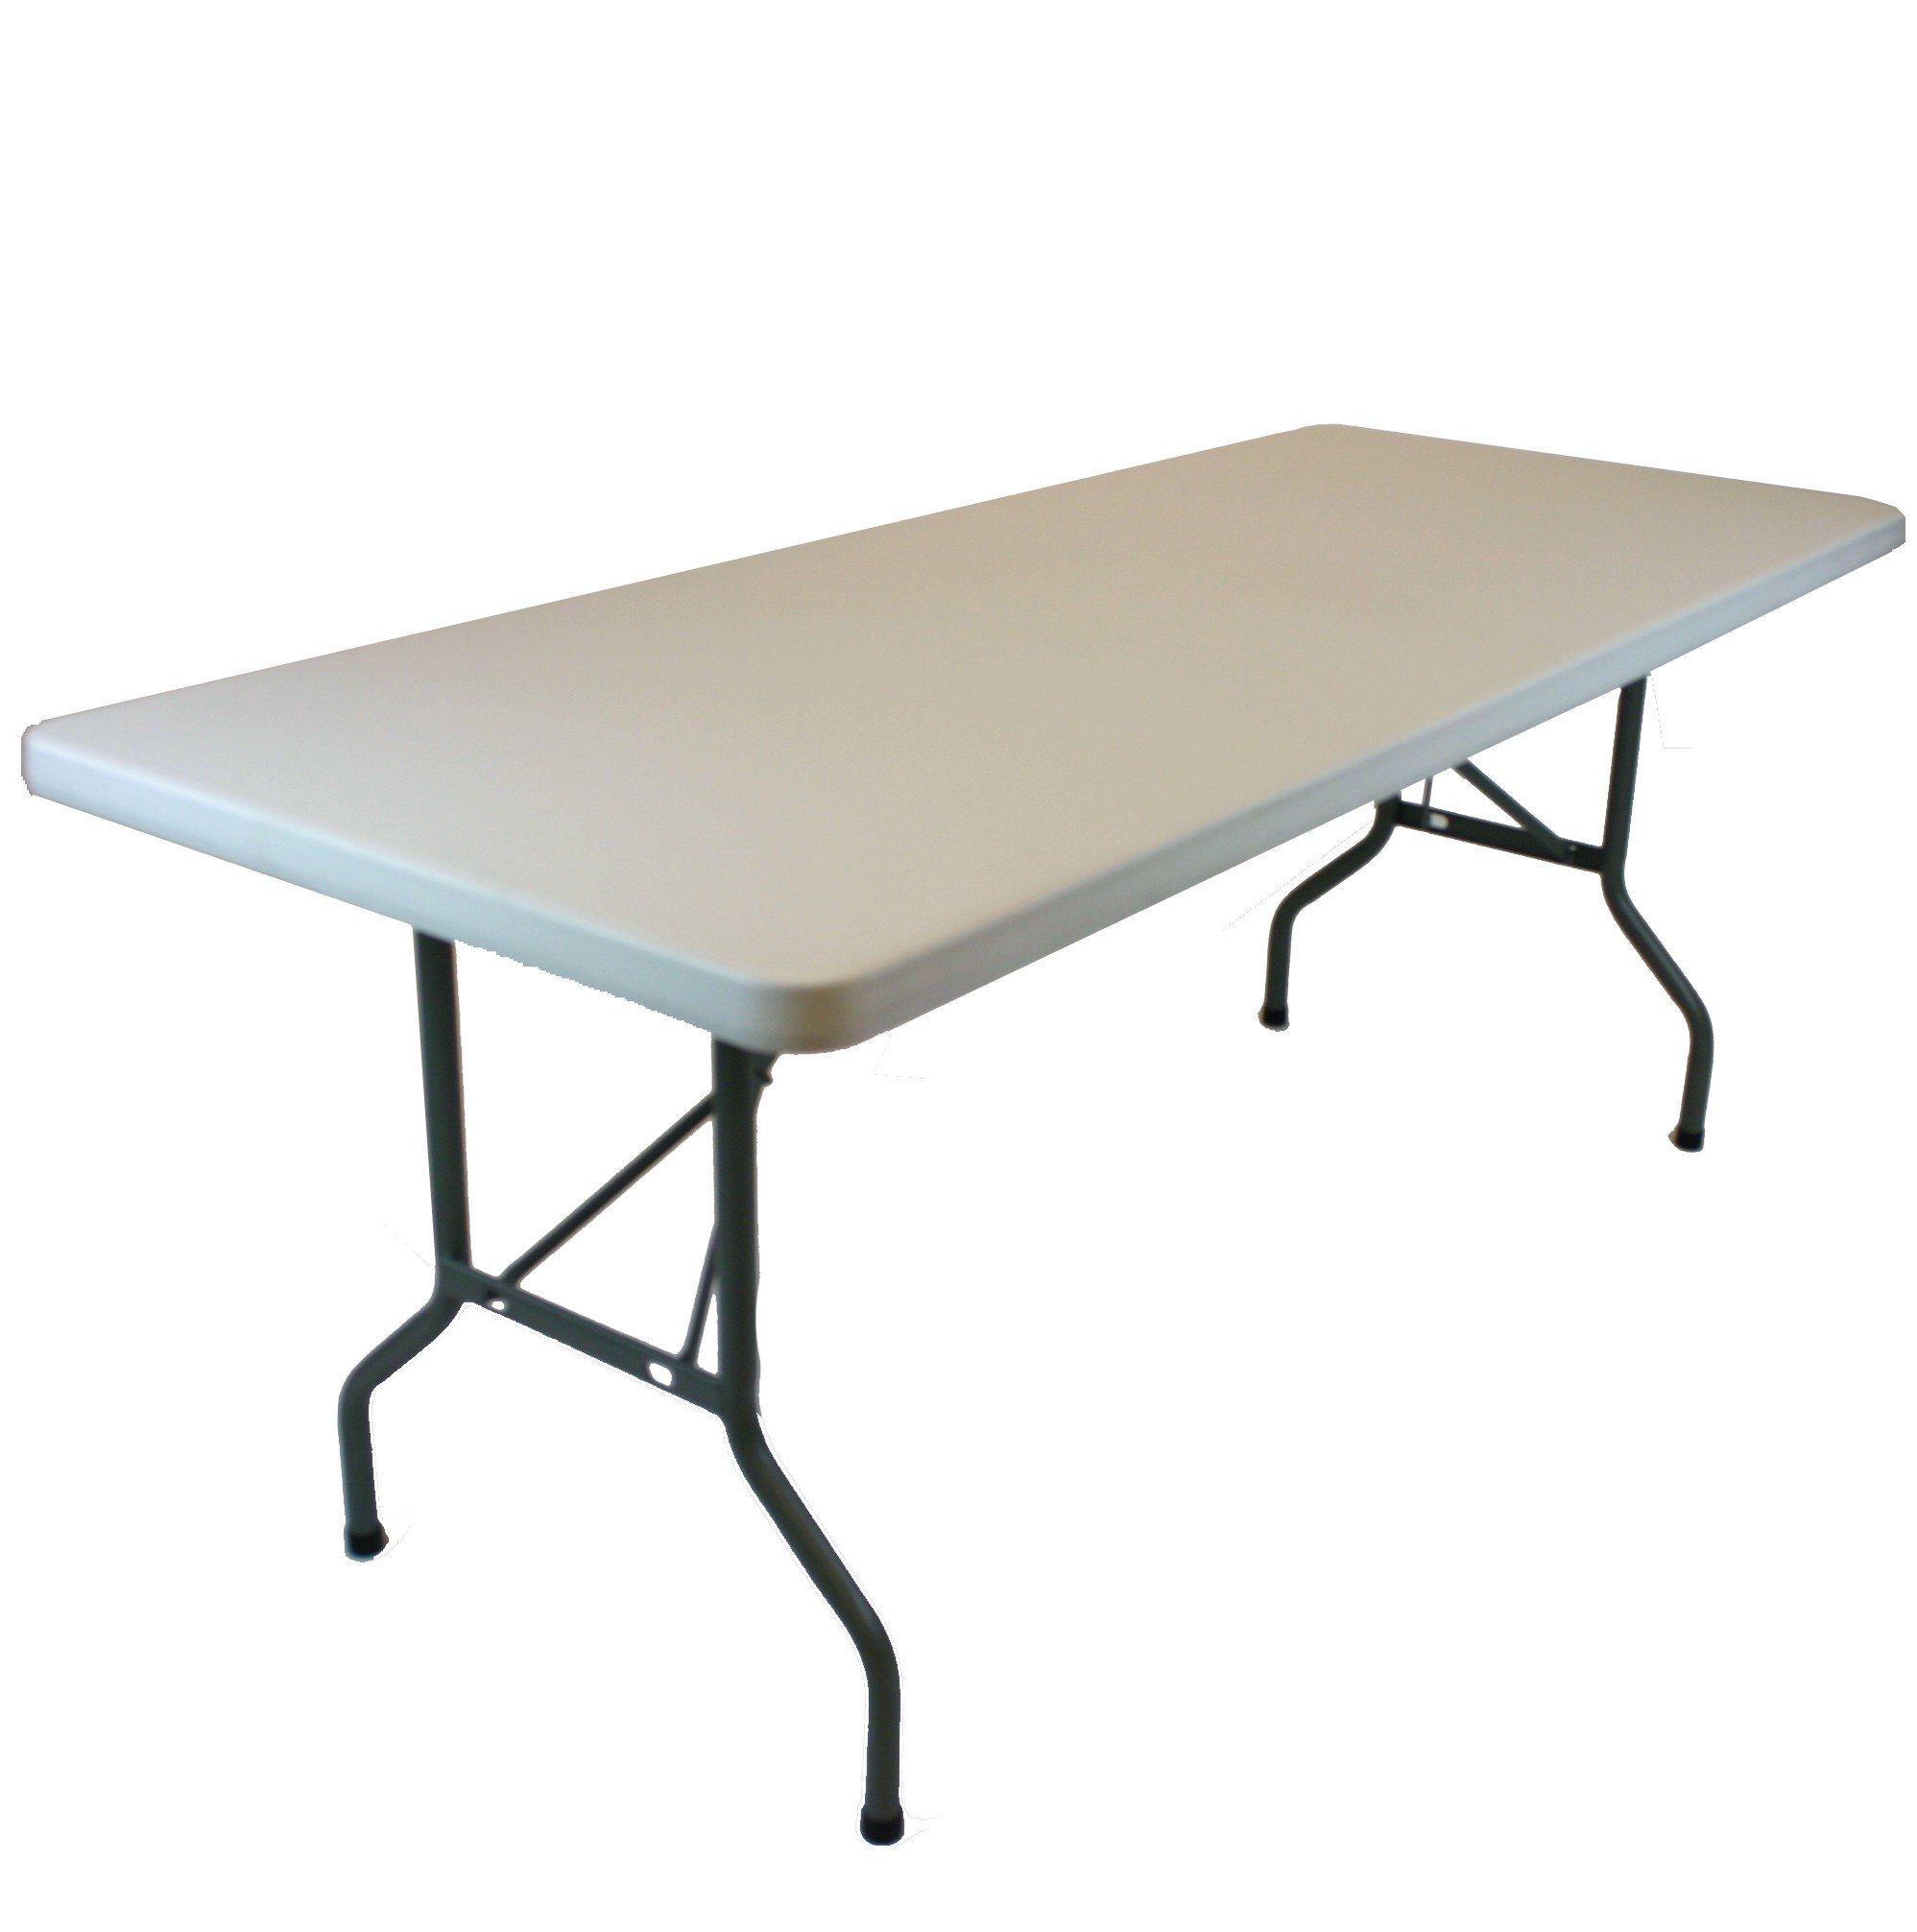 6'x30'' Plastic Folding Banquet Table Wholesale | EventStable.com